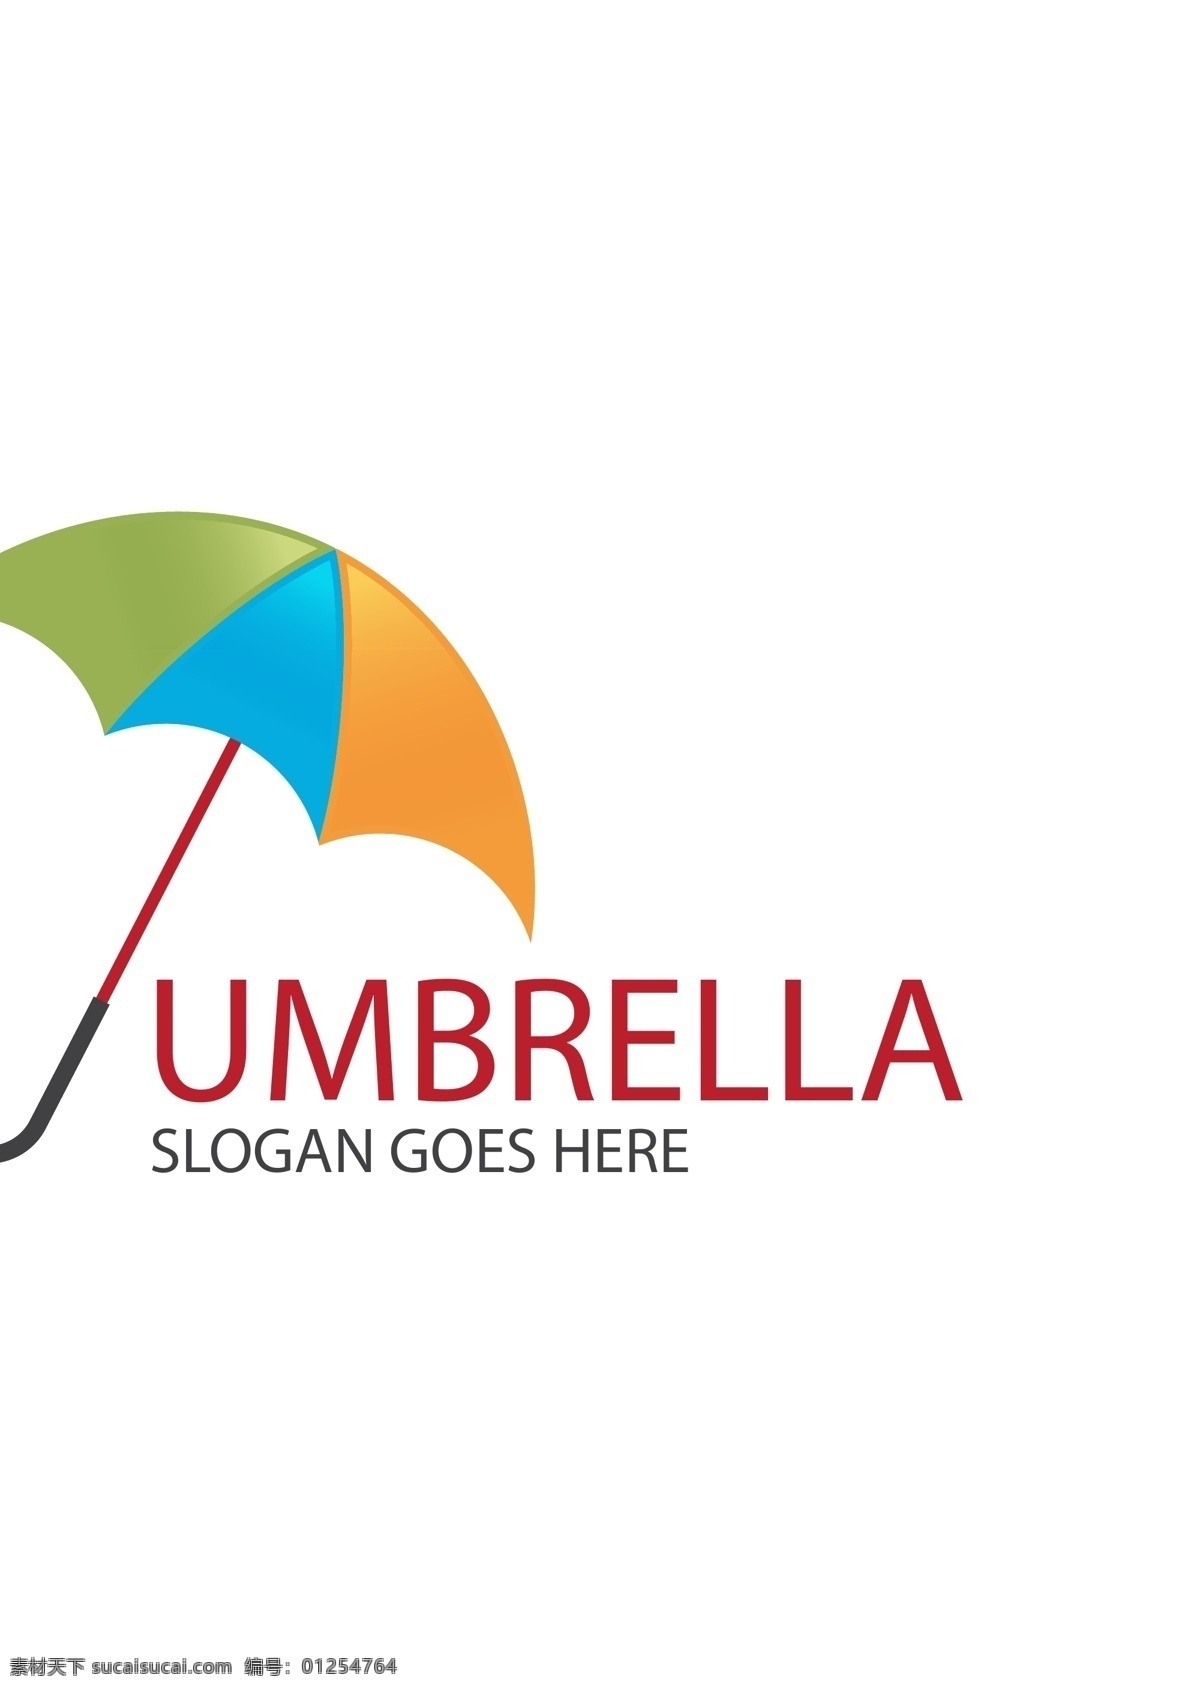 雨伞矢量图片 雨伞 矢量素材 商业 公司 企业 行业标志 矢量 高清图片